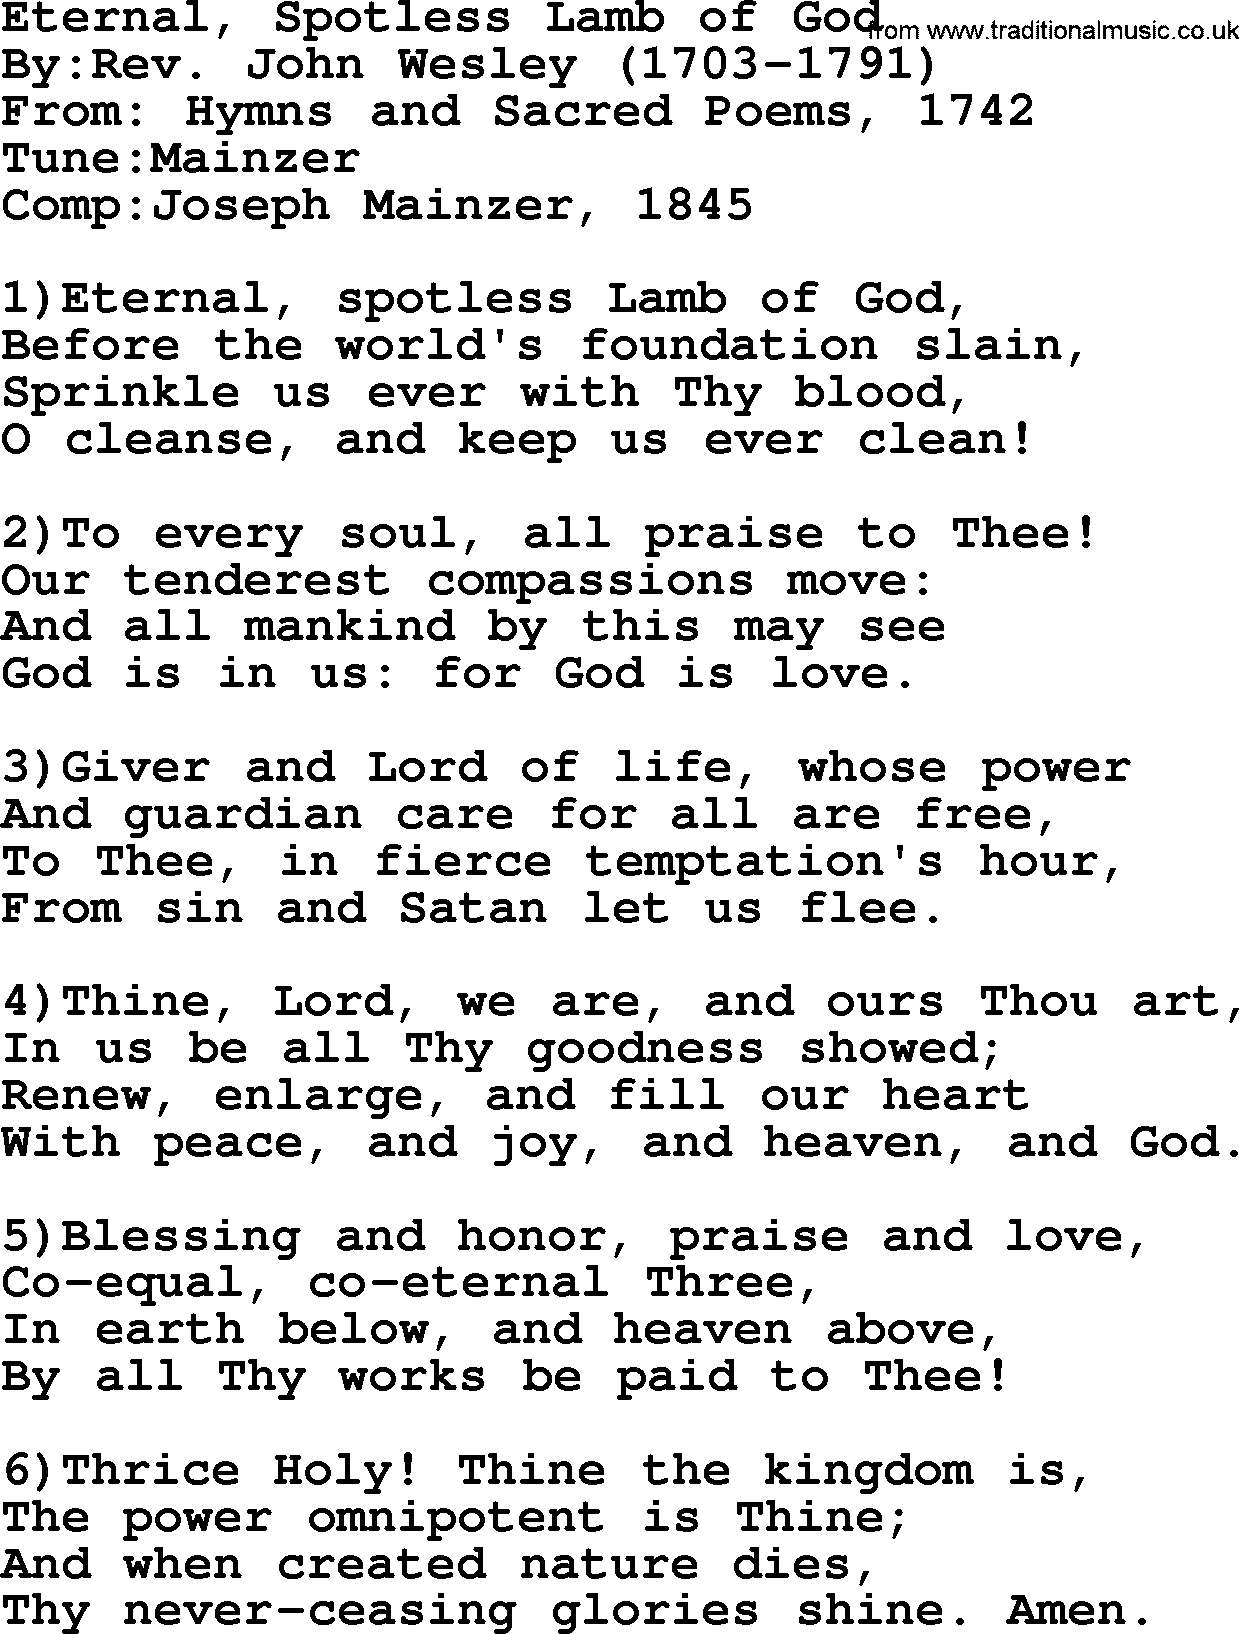 Methodist Hymn: Eternal, Spotless Lamb Of God, lyrics